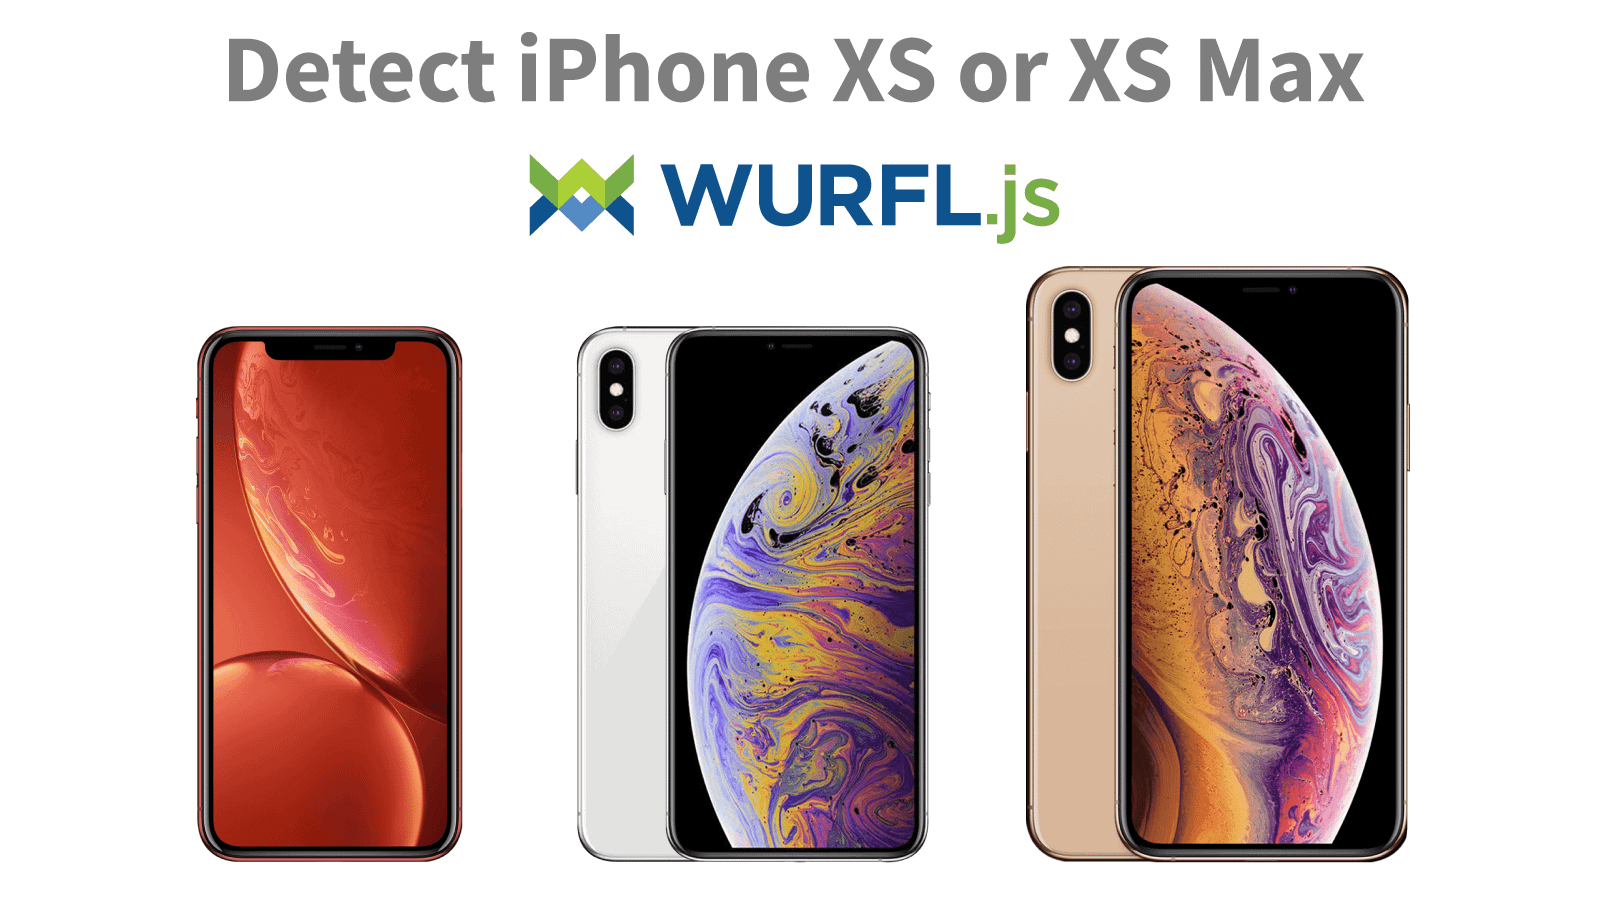 Detect iPhone XS Max WURFLjs